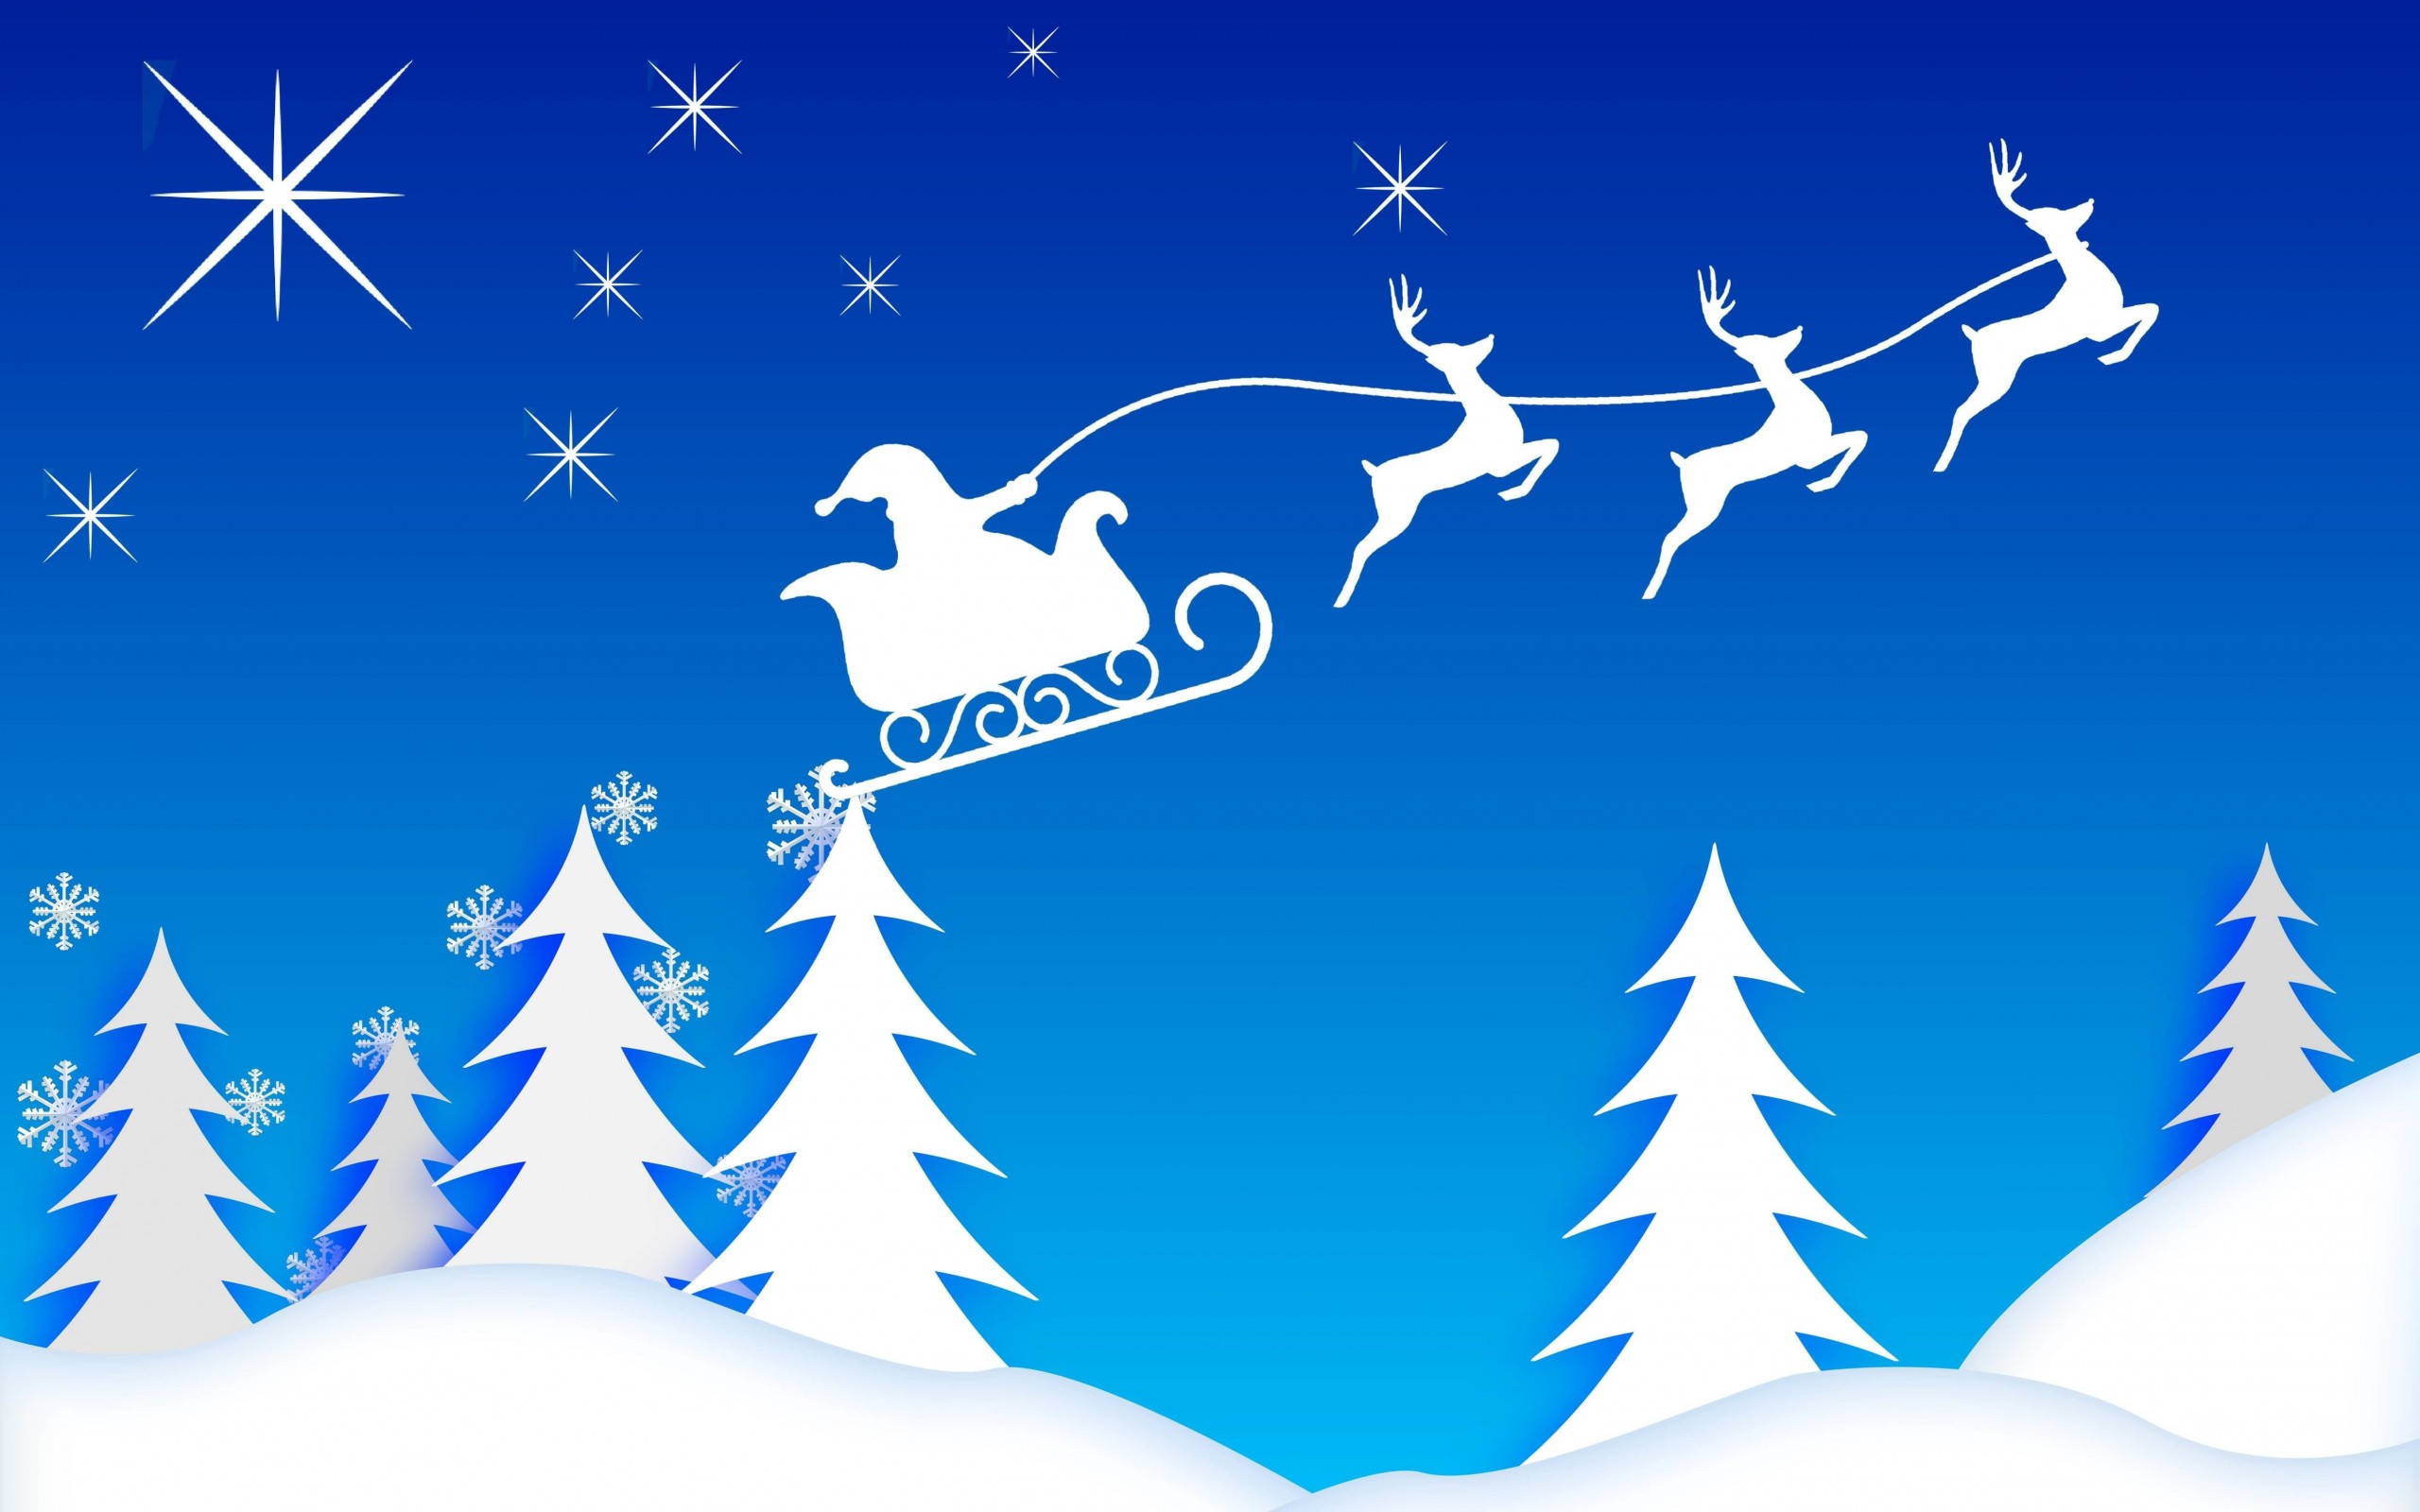 Santa’s Sleigh Illustration Wallpaper for Desktop 2560x1600